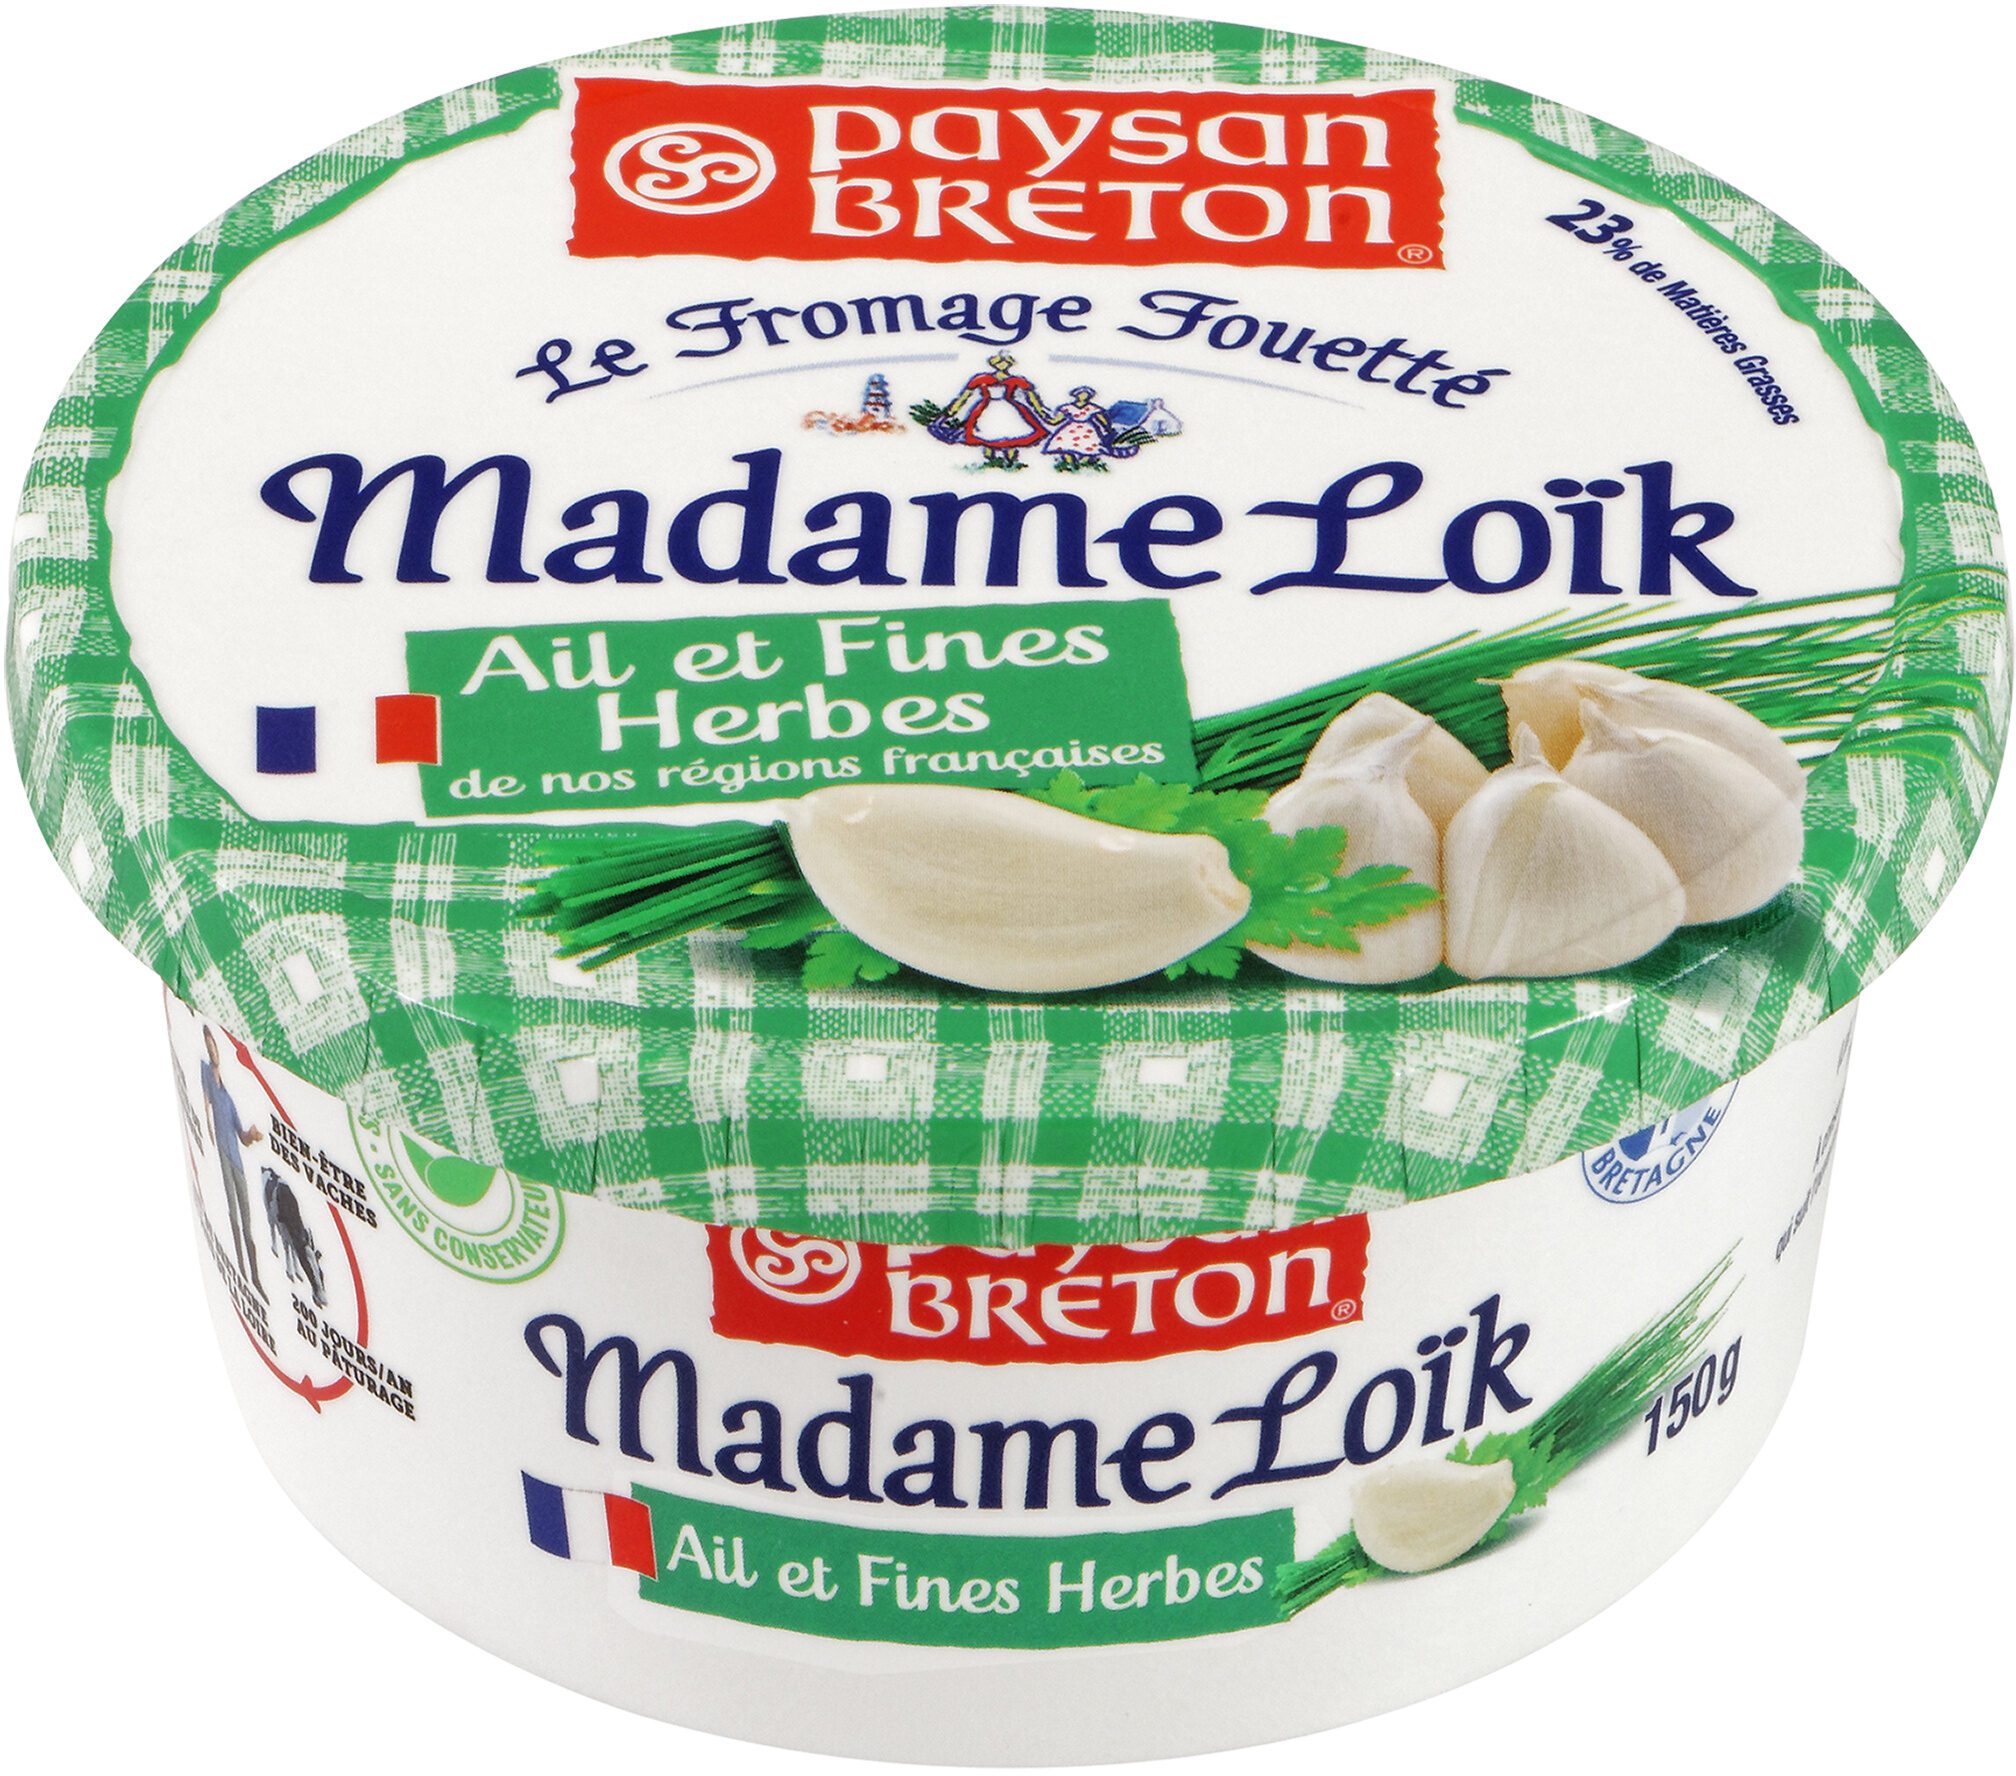 Paysan Breton - Le Fromage Fouetté Madame Loïk - Ail et fines herbes de nos régions françaises - Produkt - fr